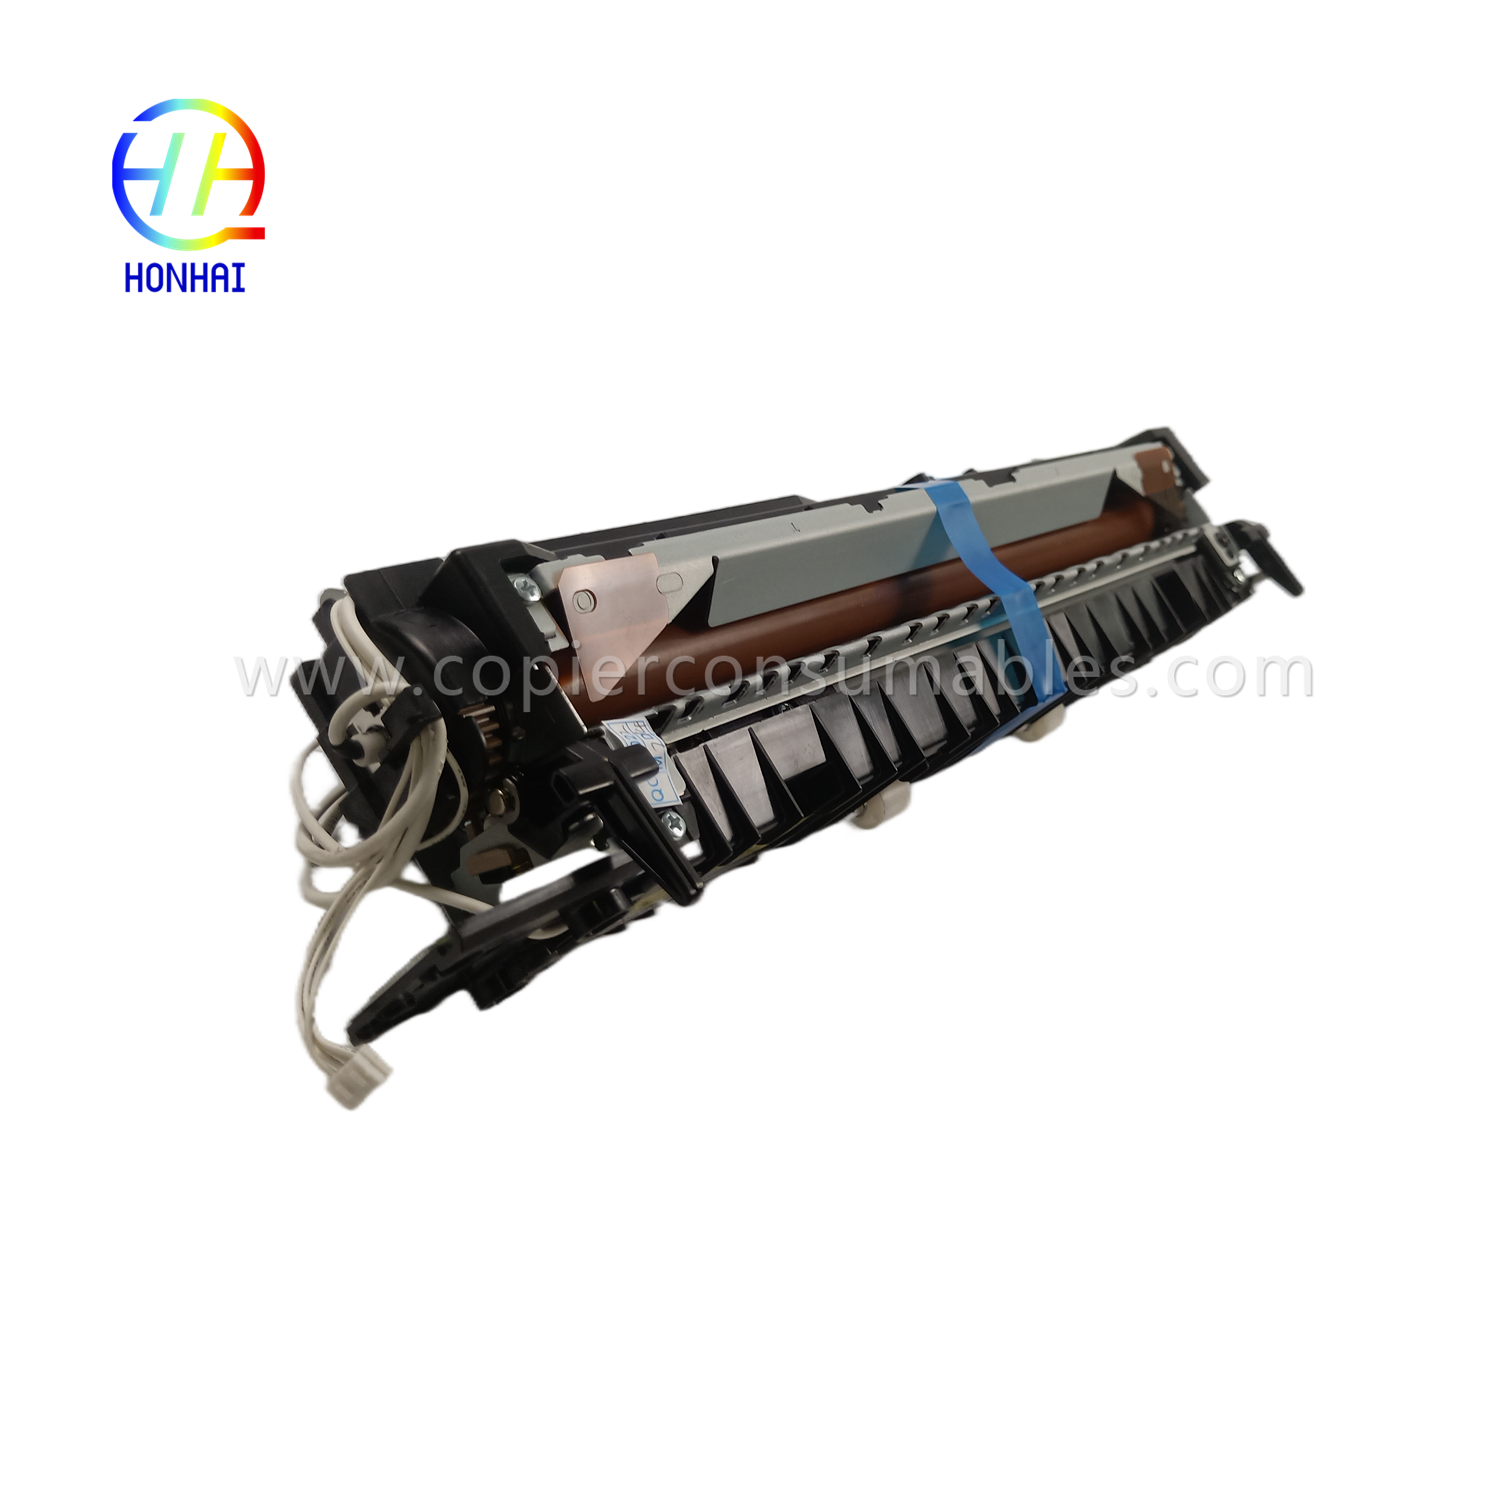 https://www.copierhonhaitech.com/fuser-unit-for-samsung-jc91-01163a-4250-4350-k4250-k4350-k4250rx-k4350lx-k4250lx-fuser-assemble-product/